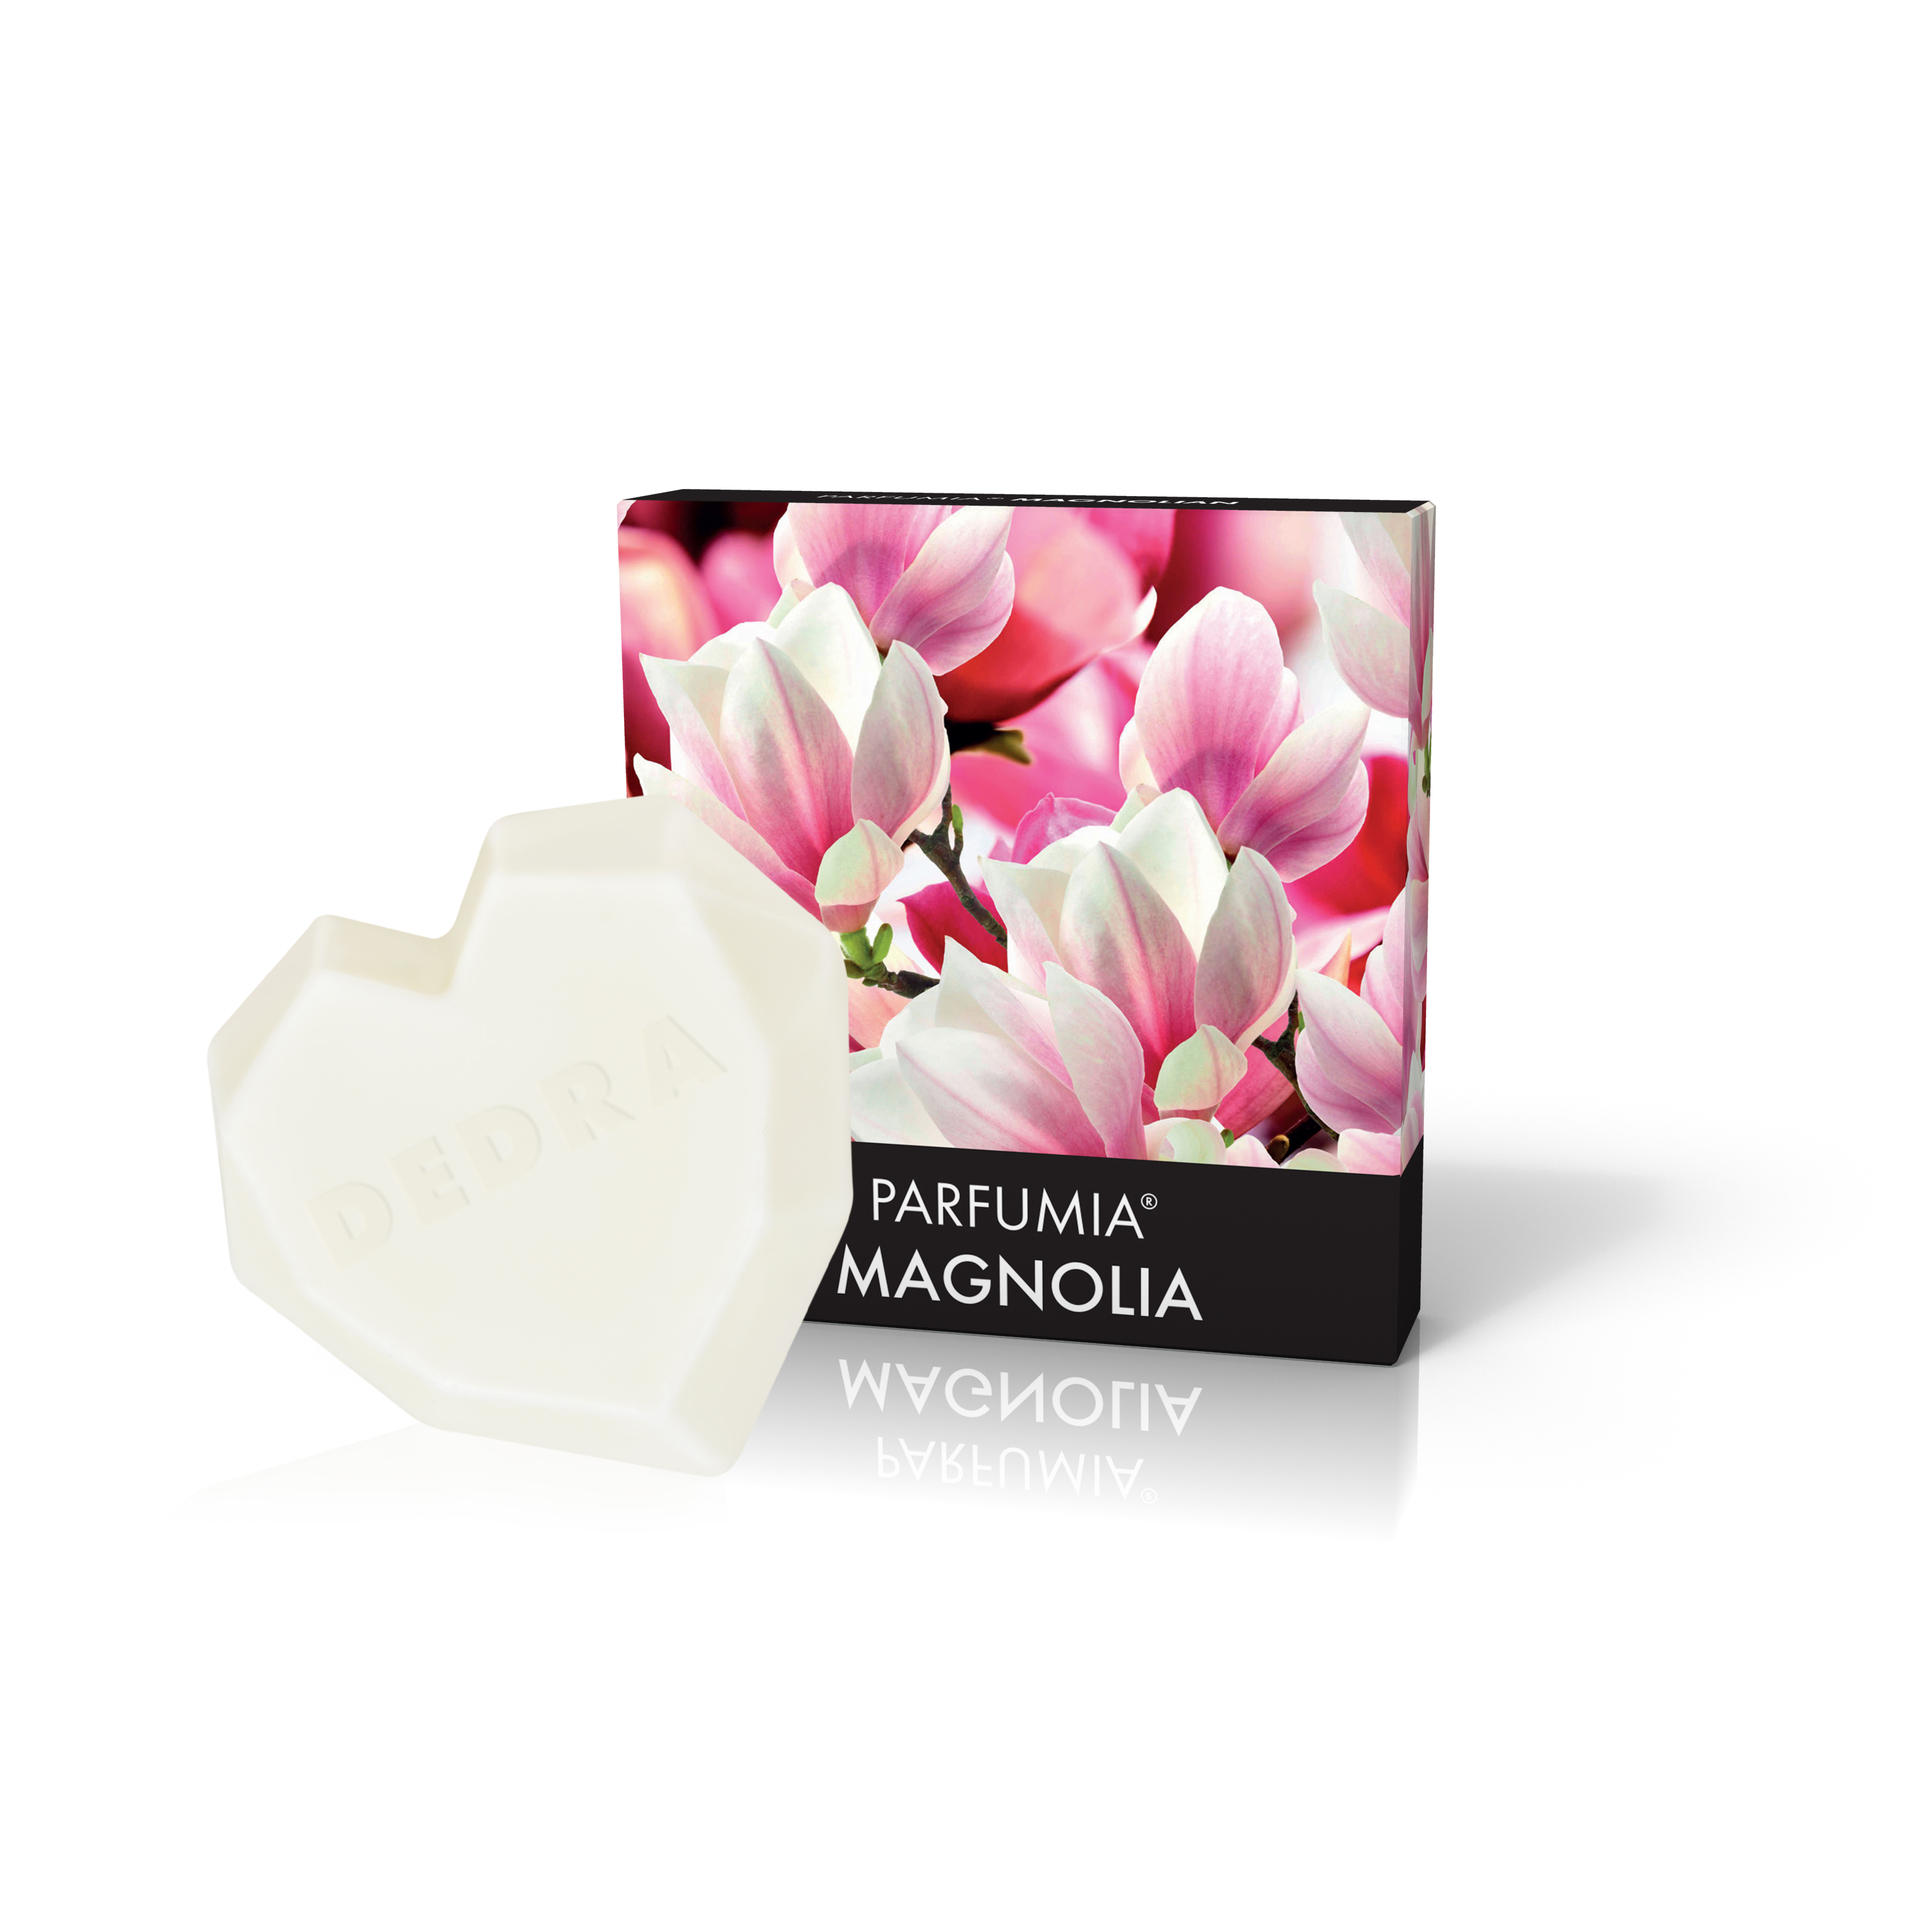 Vonný sójový EKO vosk Parfumia Magnolia